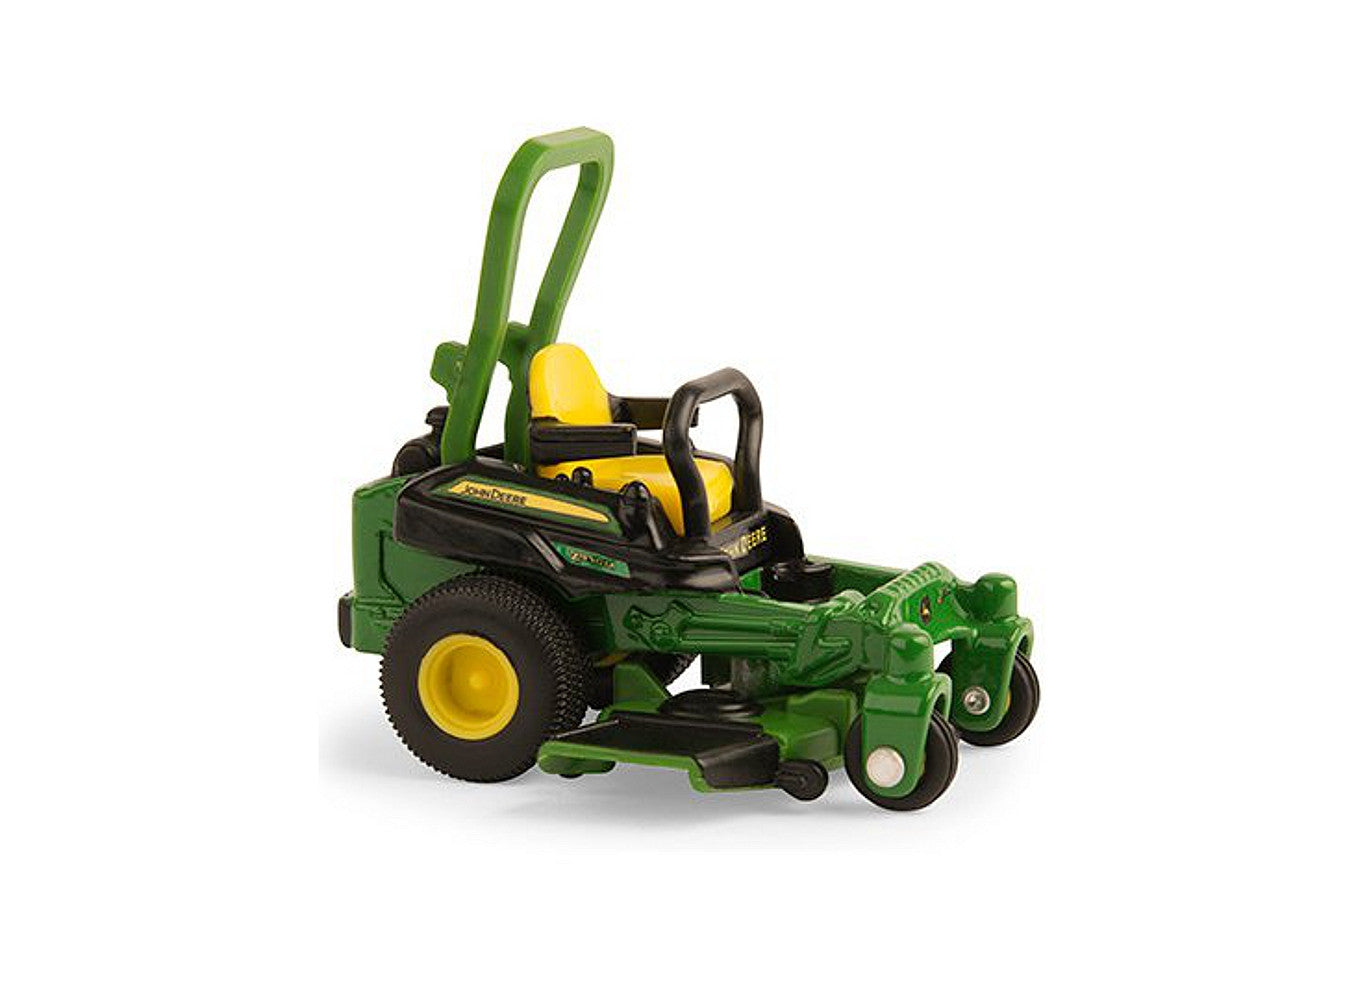 1/32 John Deere Z930M Zero Turn Lawn Mower Toy by Ertl 